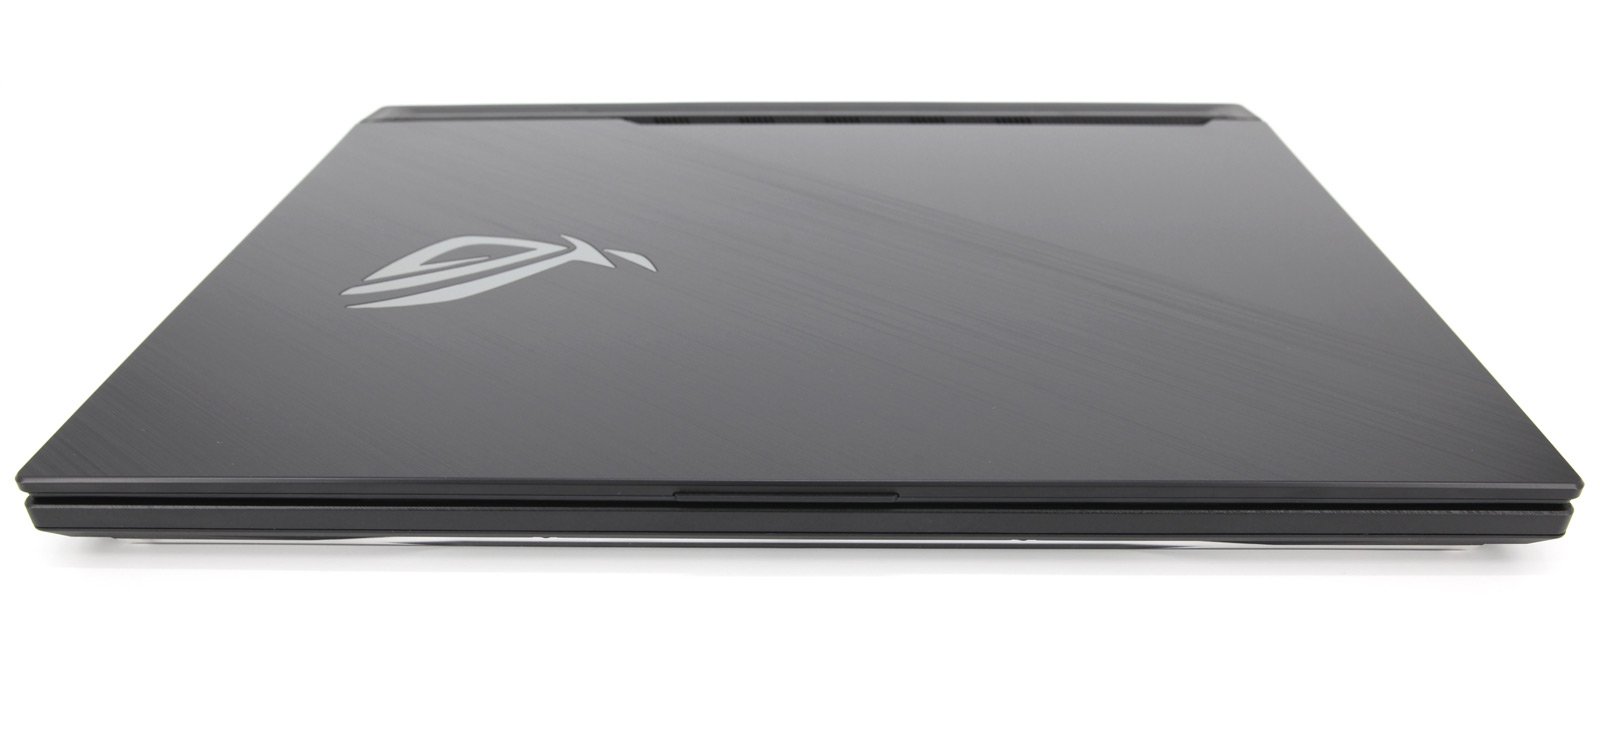 ASUS G512 15.6" Gaming Laptop: GTX 1660 Ti, Core i7-10750H, 512GB SSD - CruiseTech